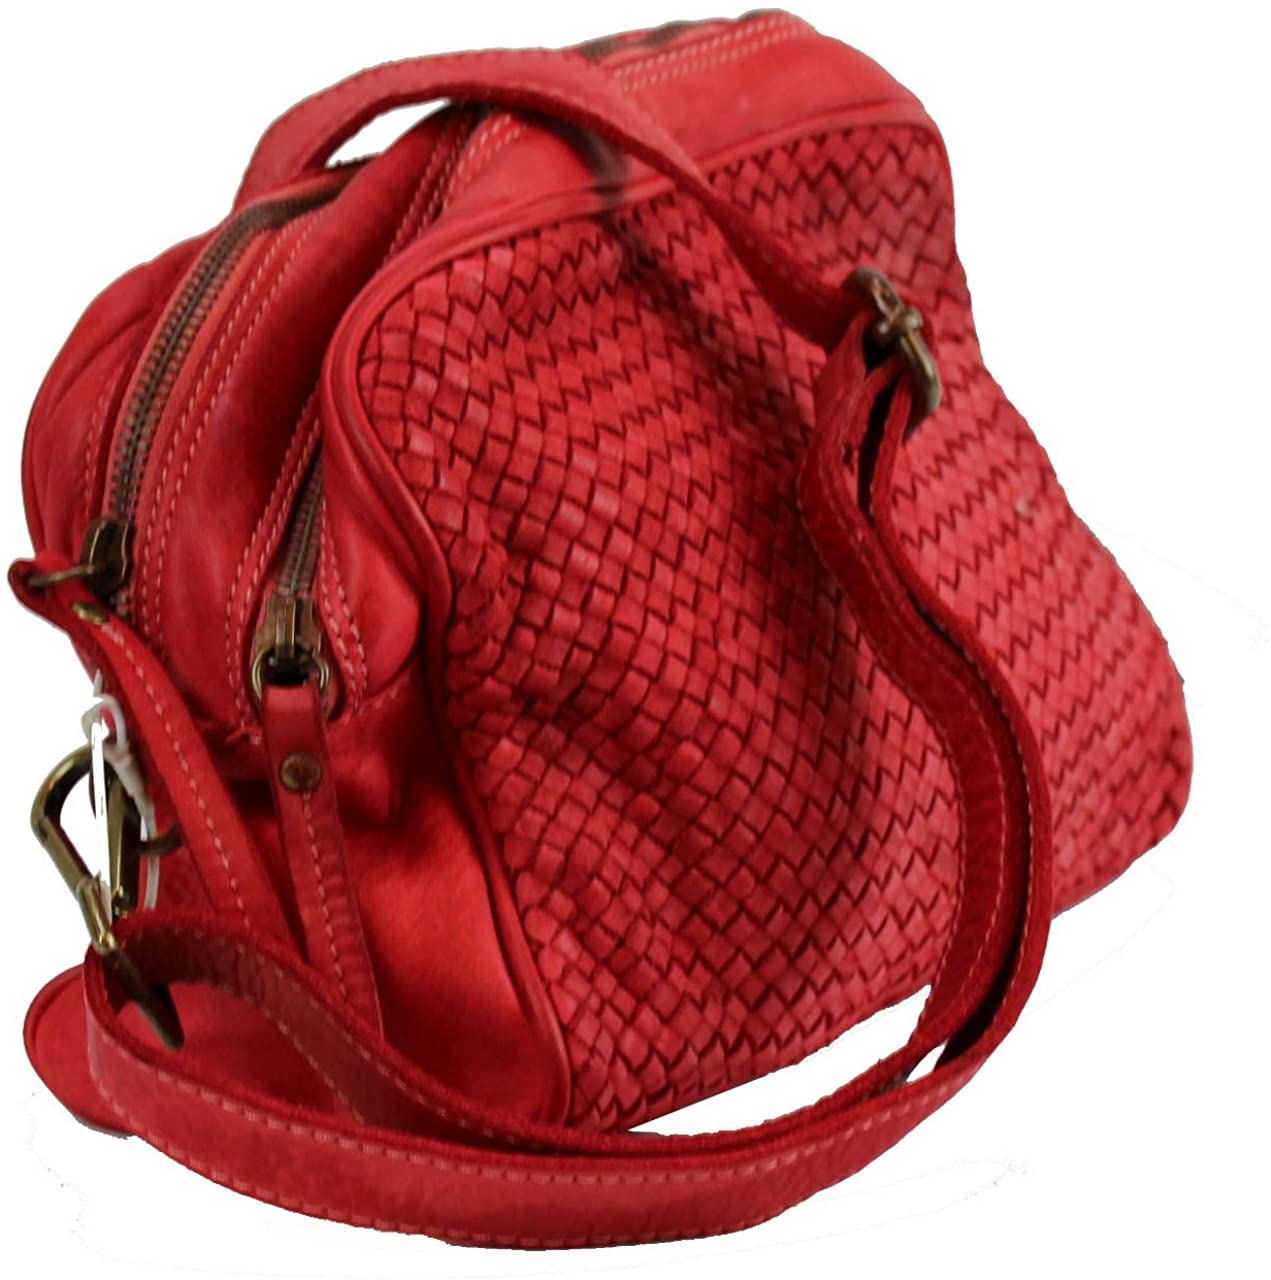 BZNA Bag Lucy Rot rosso Italy Designer Clutch Braided Ledertasche Umhängetasche Damen Handtasche Schultertasche Tasche Leder Shopper Neu